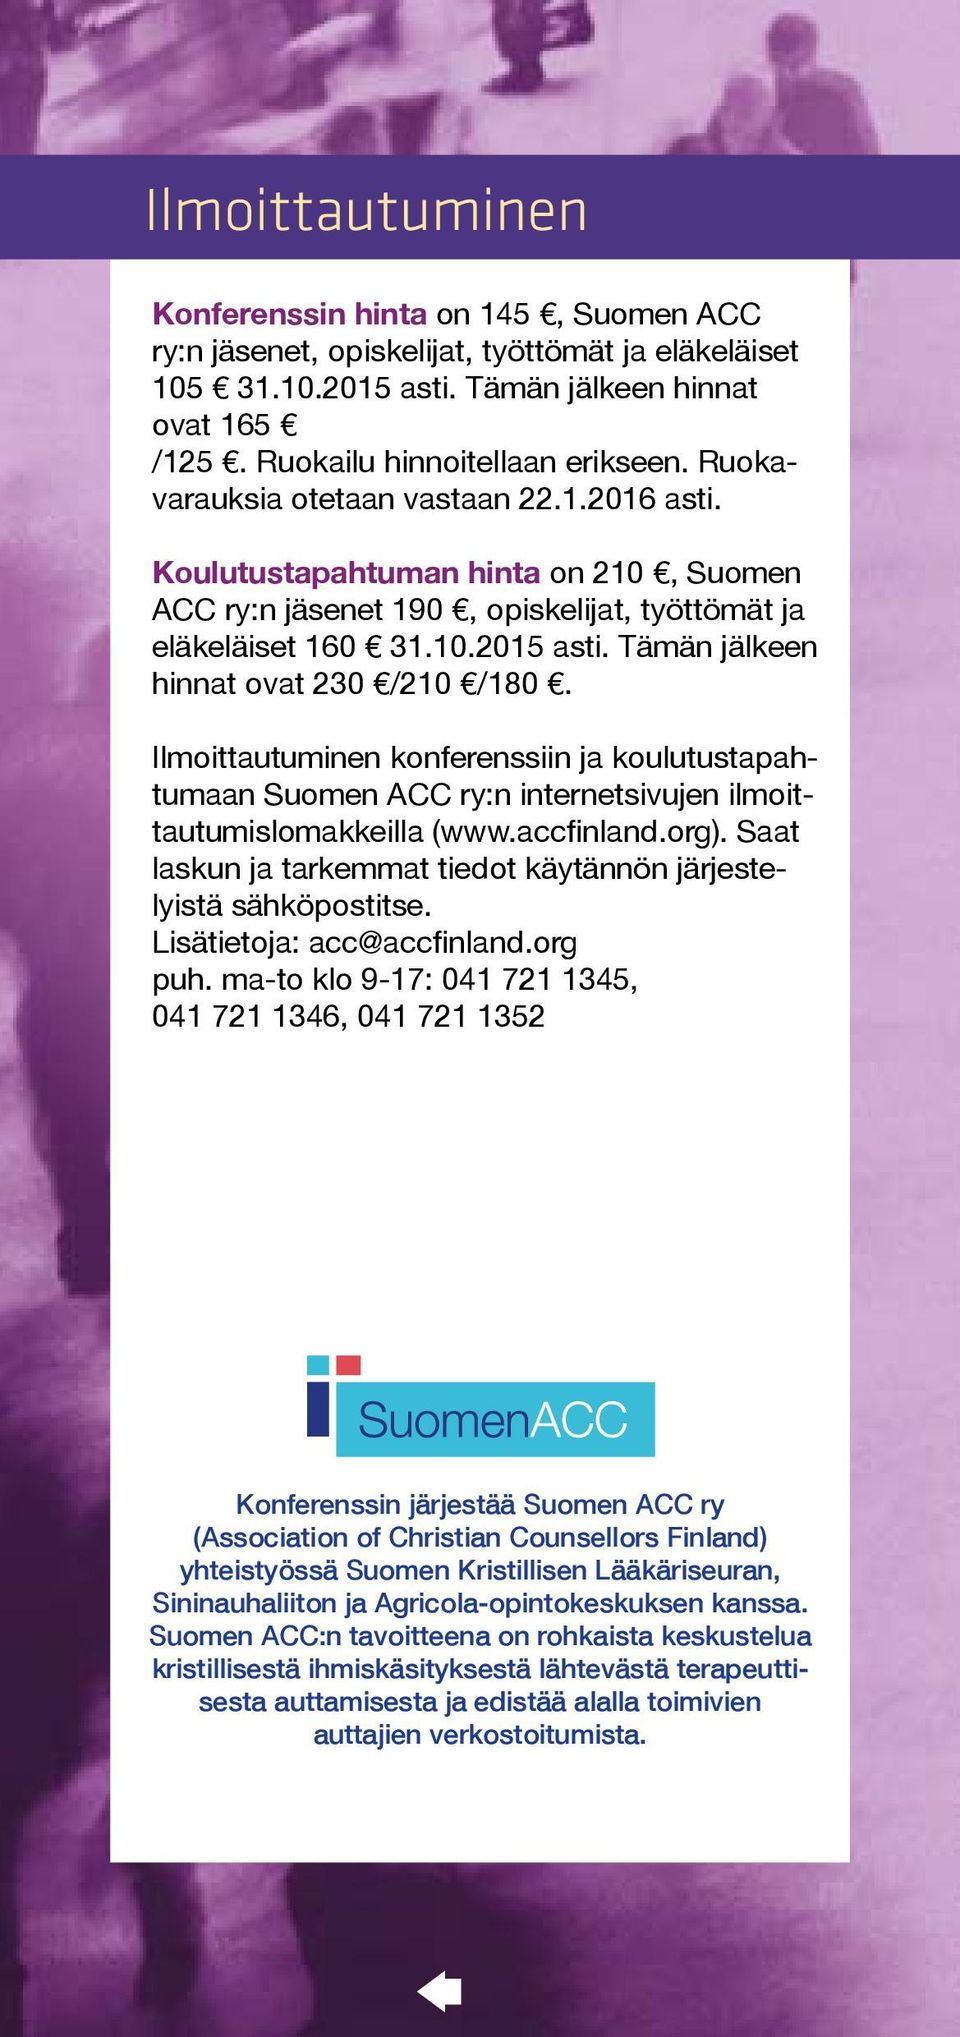 Tämän jälkeen hinnat ovat 230 /210 /180. Ilmoittautuminen konferenssiin ja koulutustapahtumaan Suomen ACC ry:n internetsivujen ilmoittautumislomakkeilla (www.accfinland.org).